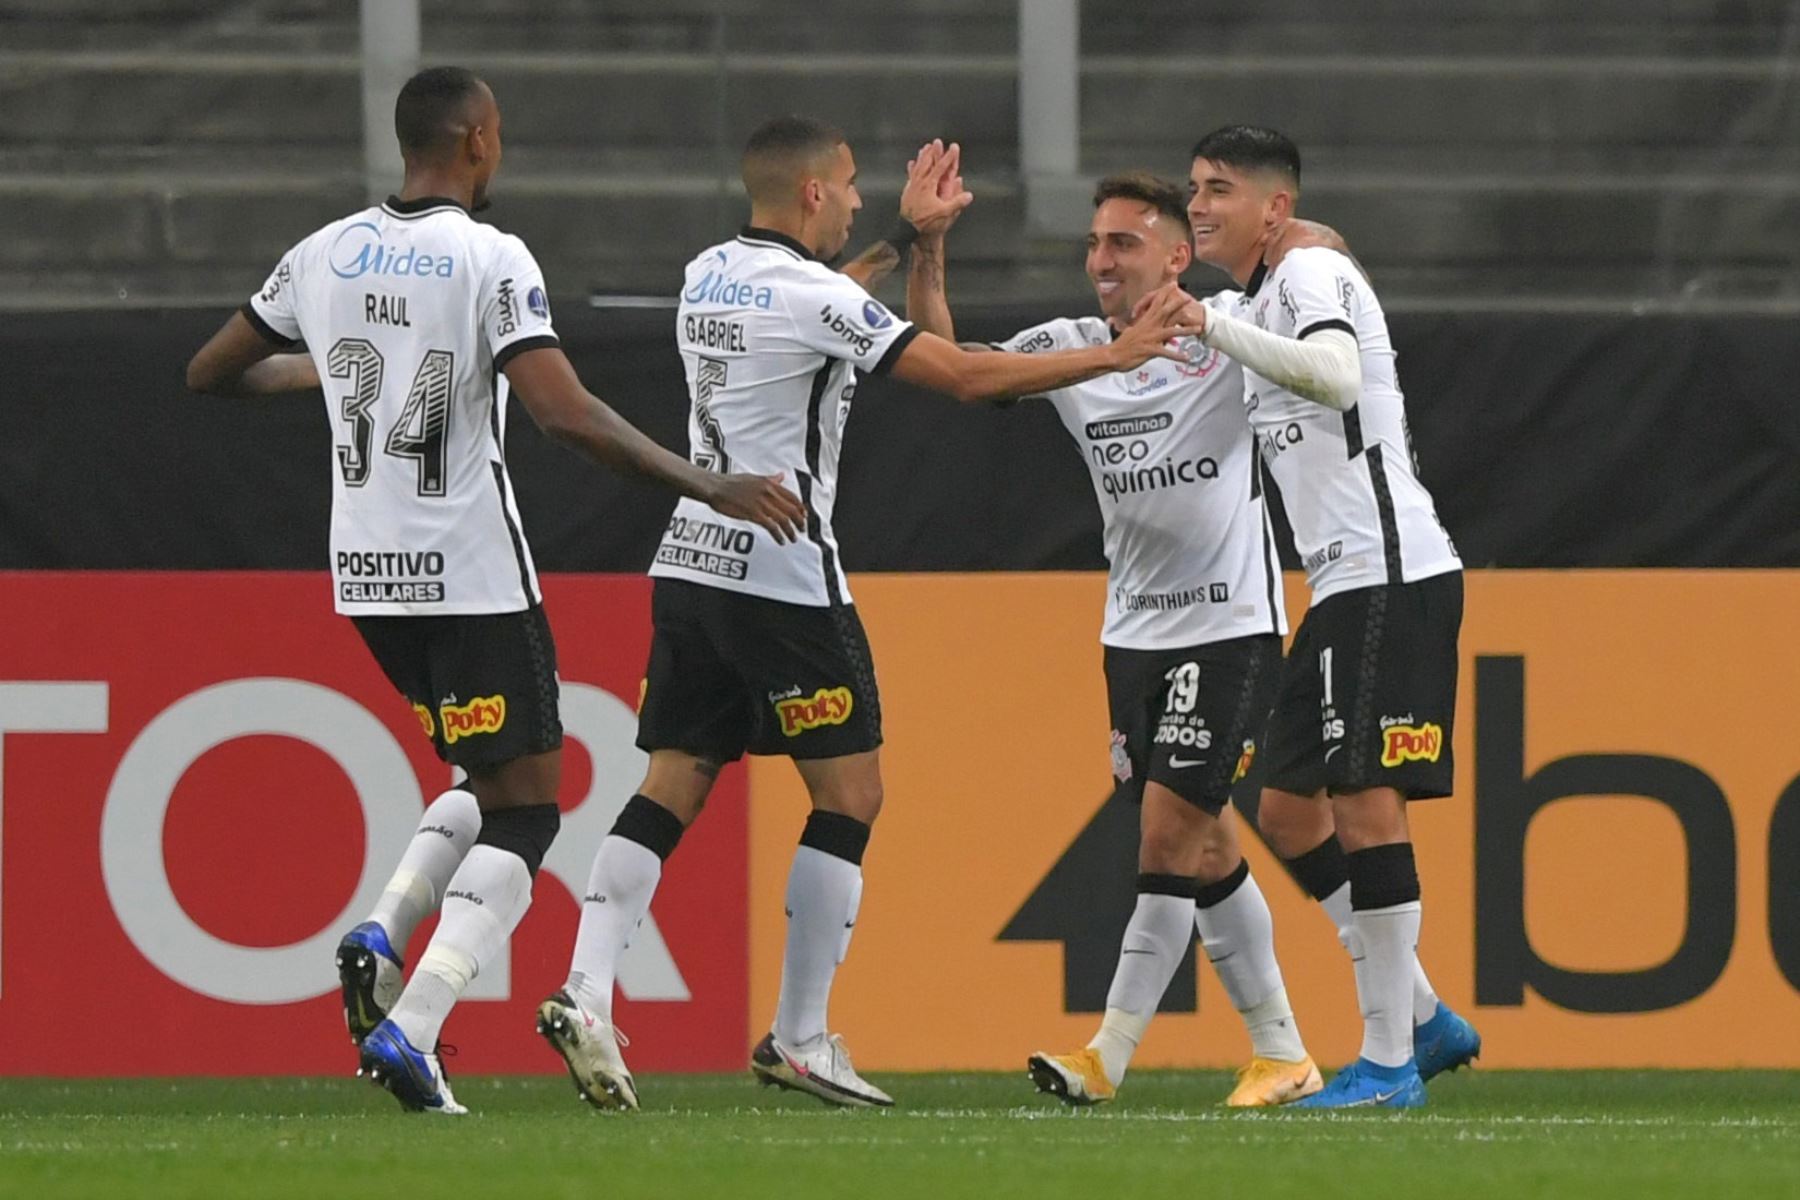 Gustavo da Silva de Corinthians celebra tras anotar un gol ante Sport Huancayo durante partido por la Copa Libertadores, en el estadio Arena de Sao Paulo. Foto: EFE